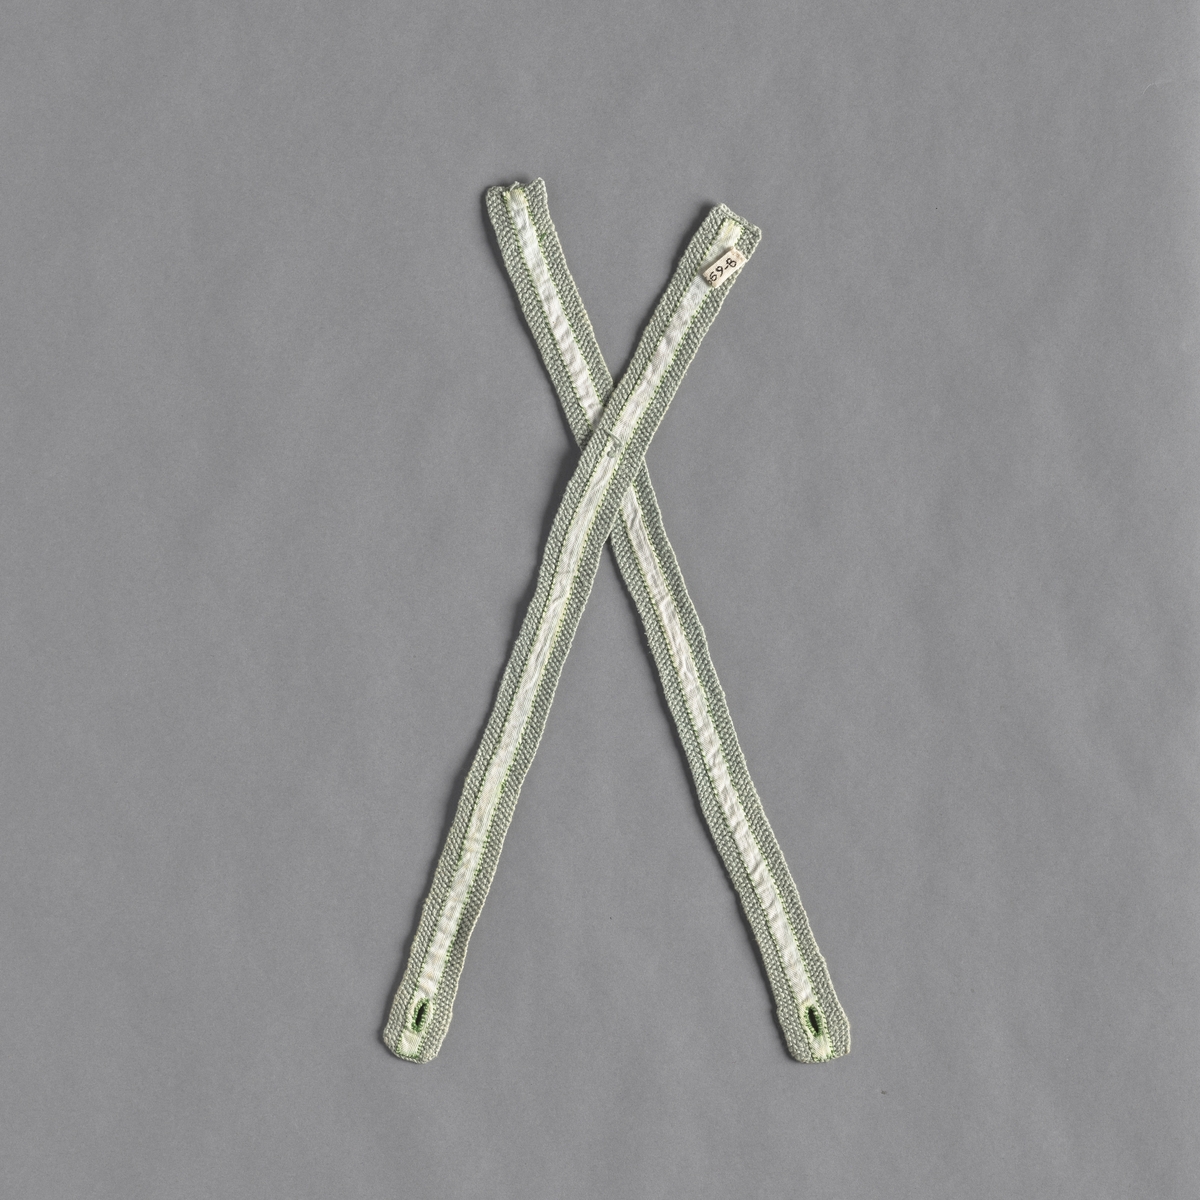 Sele strikket i perlestrikk. To lange strikkede stykker er sydd sammen. Det er sydd et hvit bomullsbånd på stykkene. Selen er i en lys grønn farge.